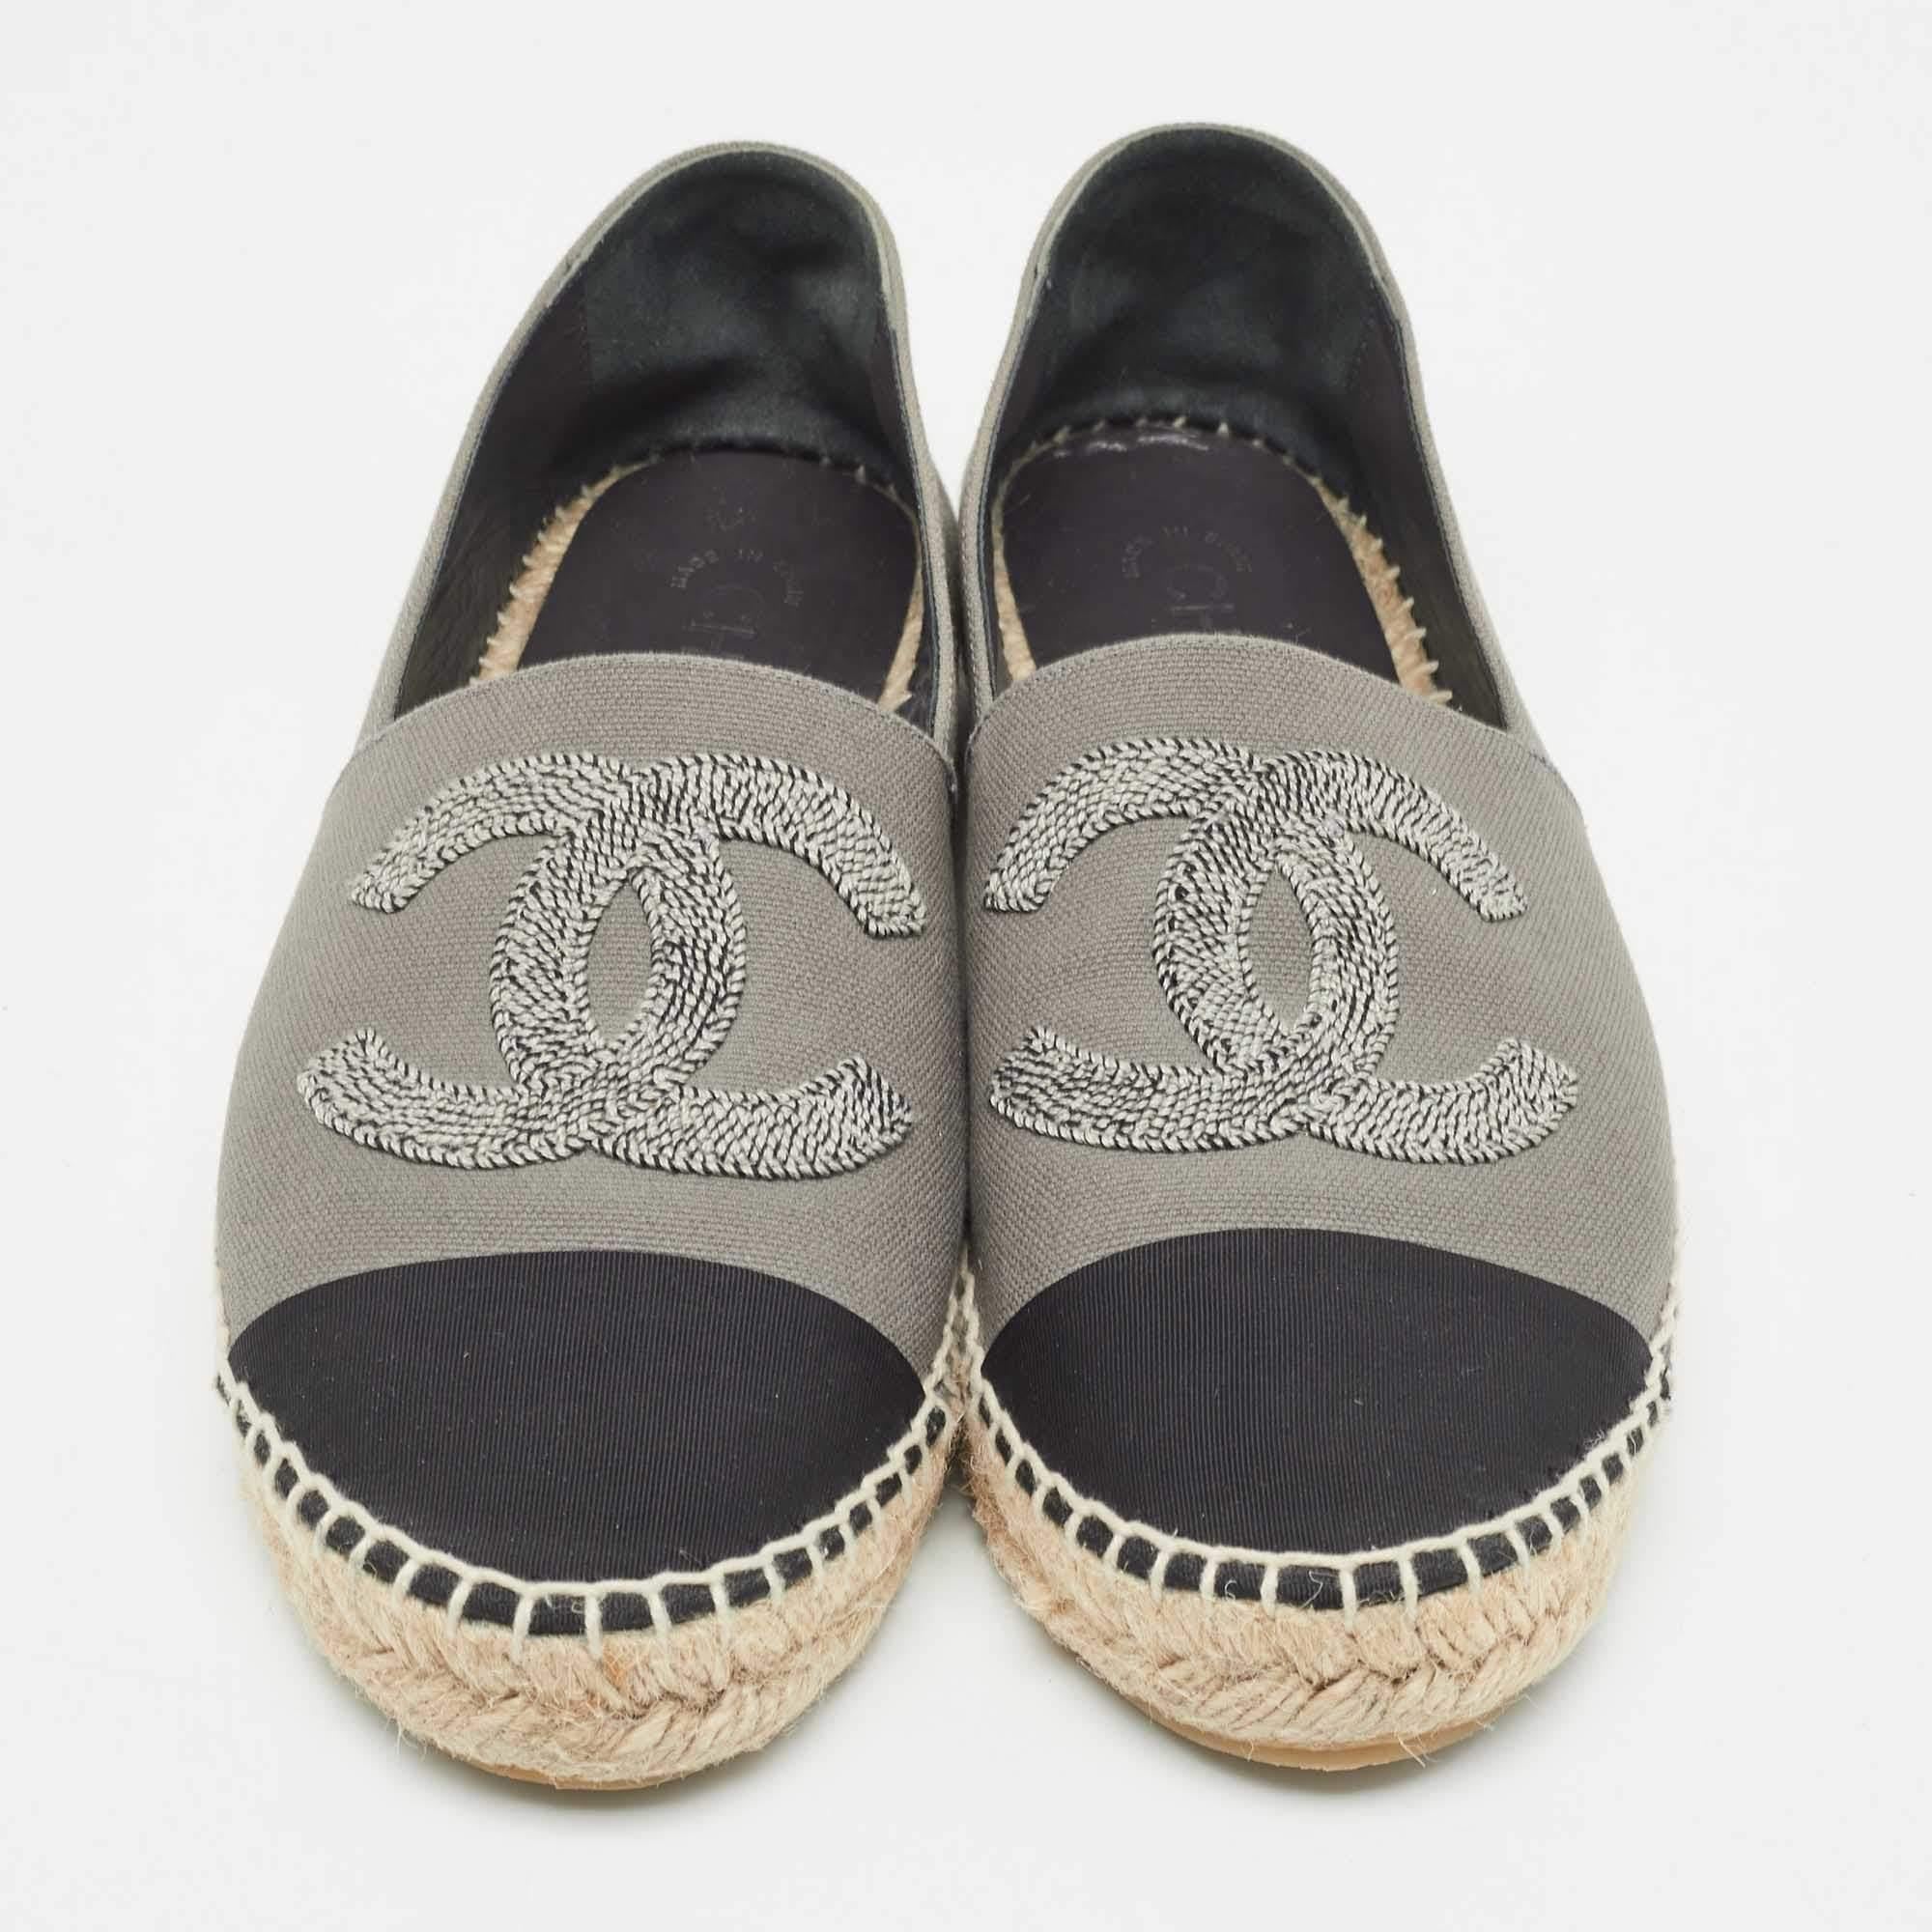 Cette paire confortable est votre premier choix lorsque vous partez pour une longue journée. Ces chaussures Chanel sont dotées d'une empeigne bien cousue et d'une semelle résistante.

